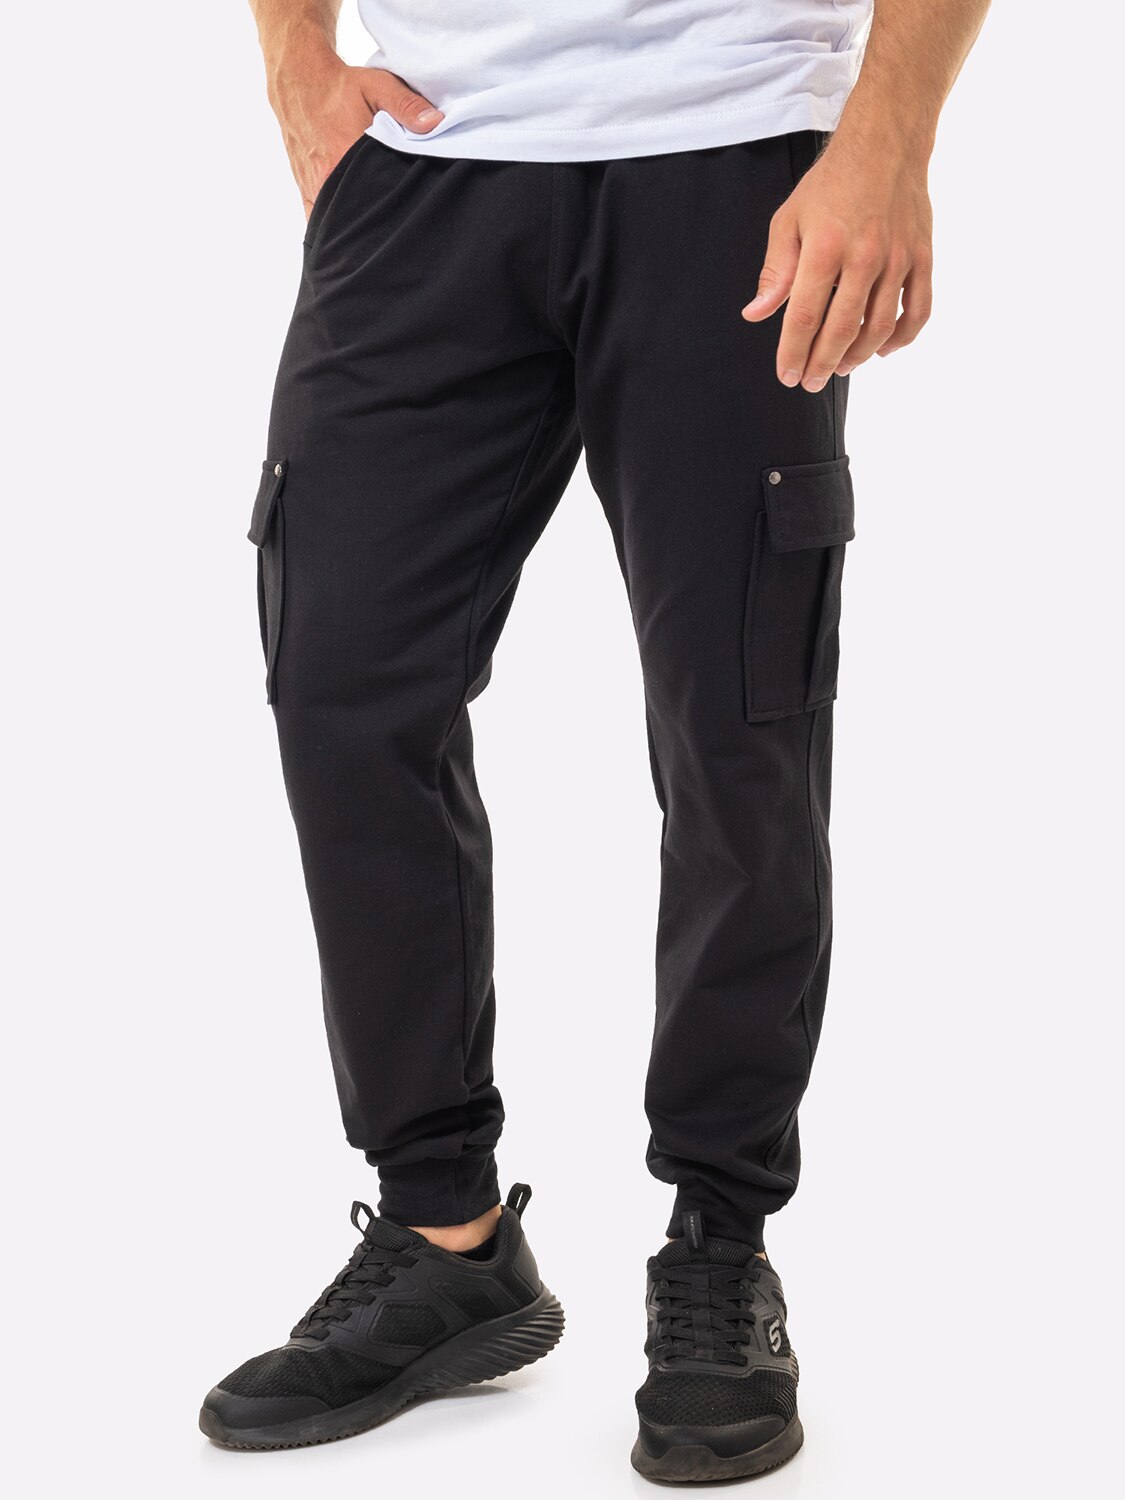 Спортивные брюки мужские HappyFox 9117 черные 48 RU